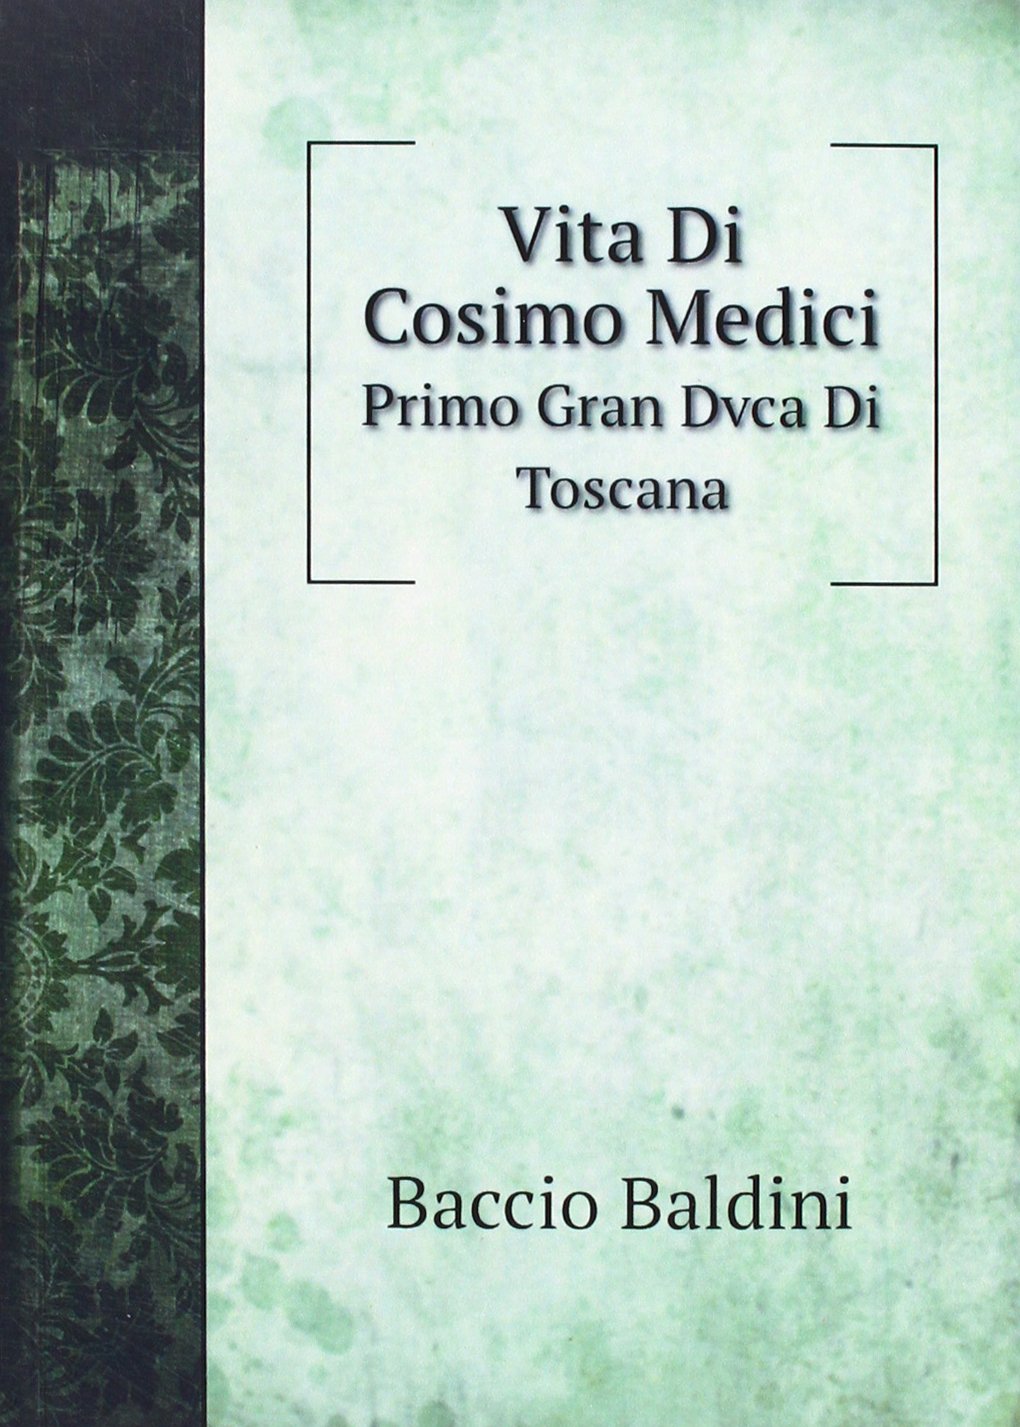 Vita Di Cosimo Medici: Primo Gran Dvca Di Toscana